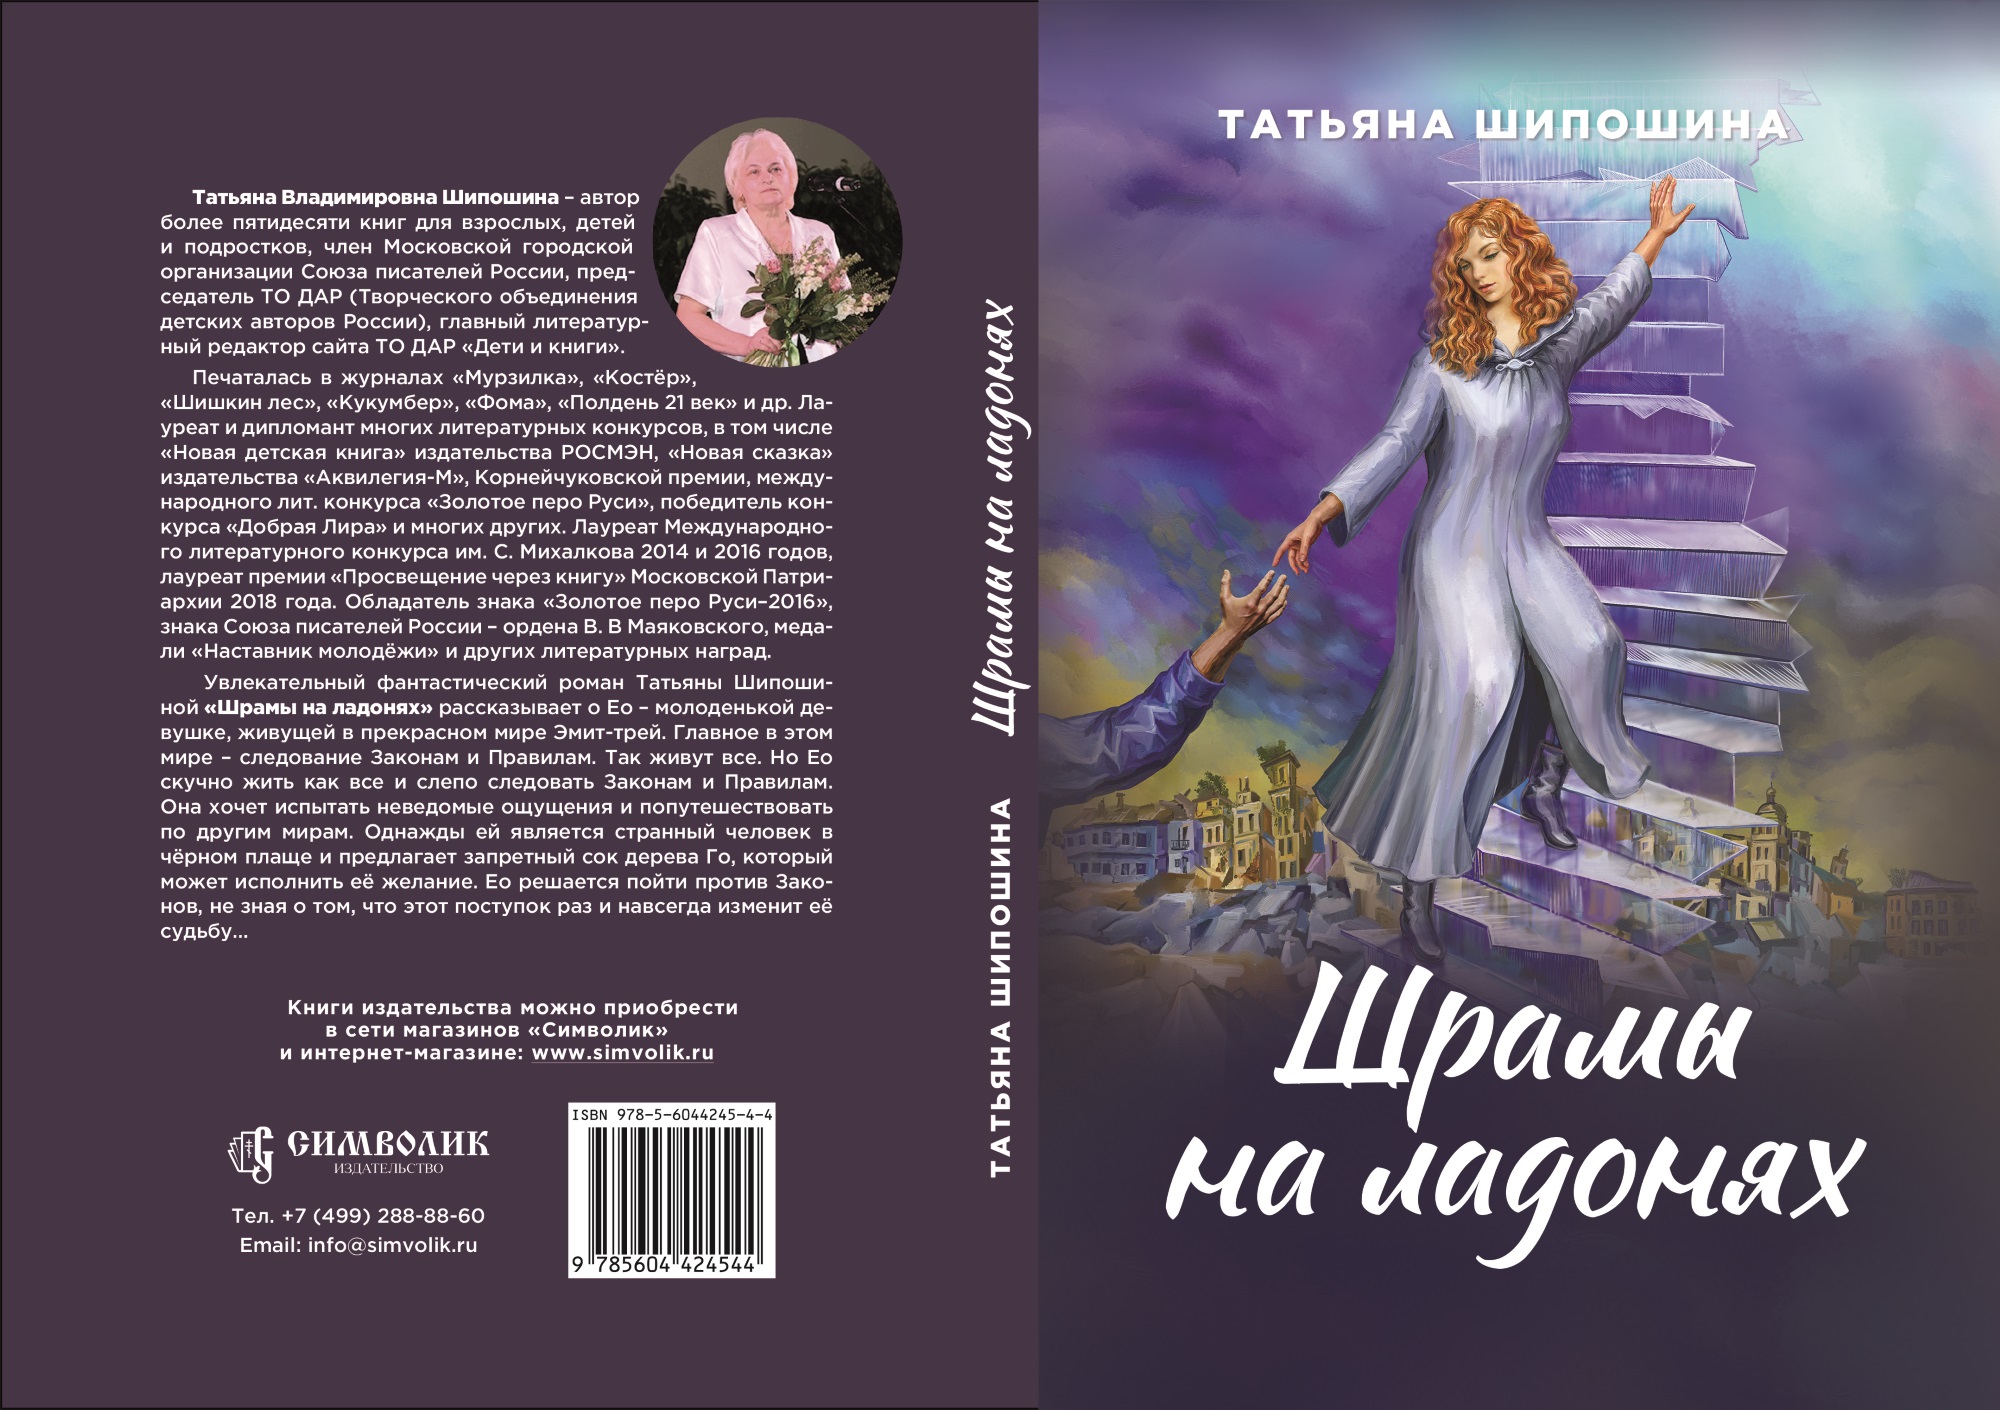 Татьяна Шипошина выпустила стихи к праздникам и не только